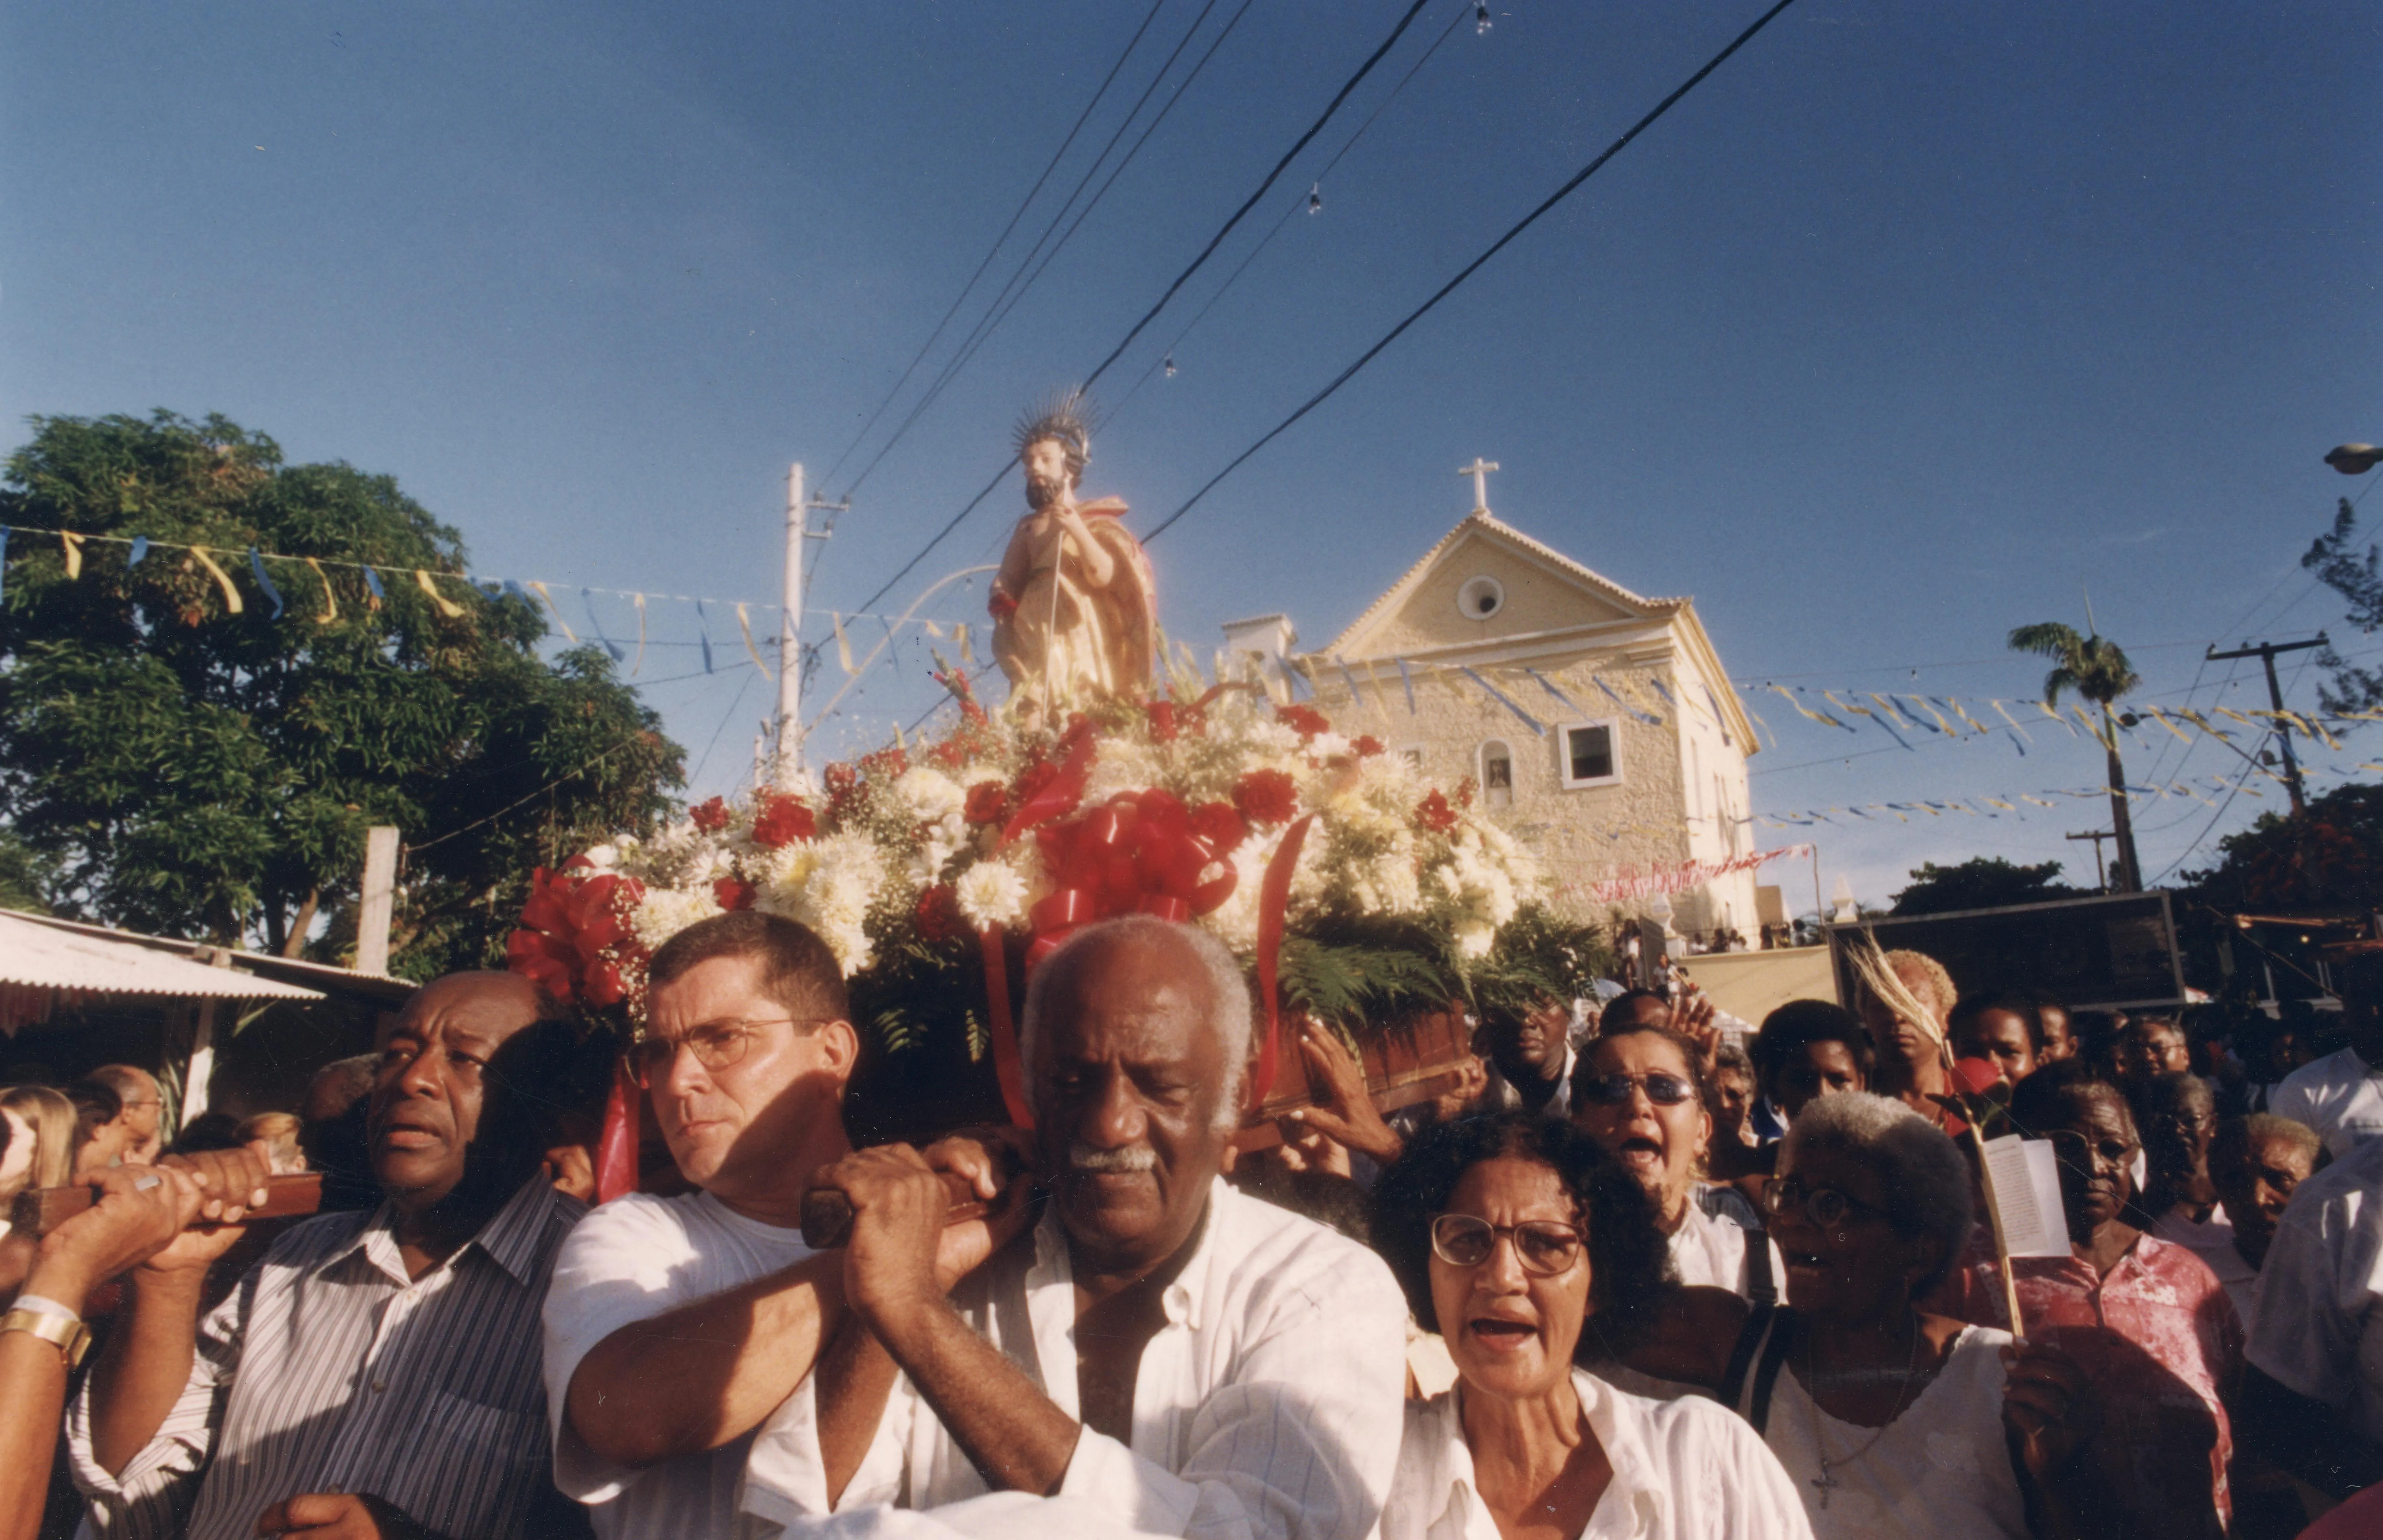 Festa de São Lázaro é caracterizada pela diversidade de elementos do catolicismo e das religiões afro-brasileiras